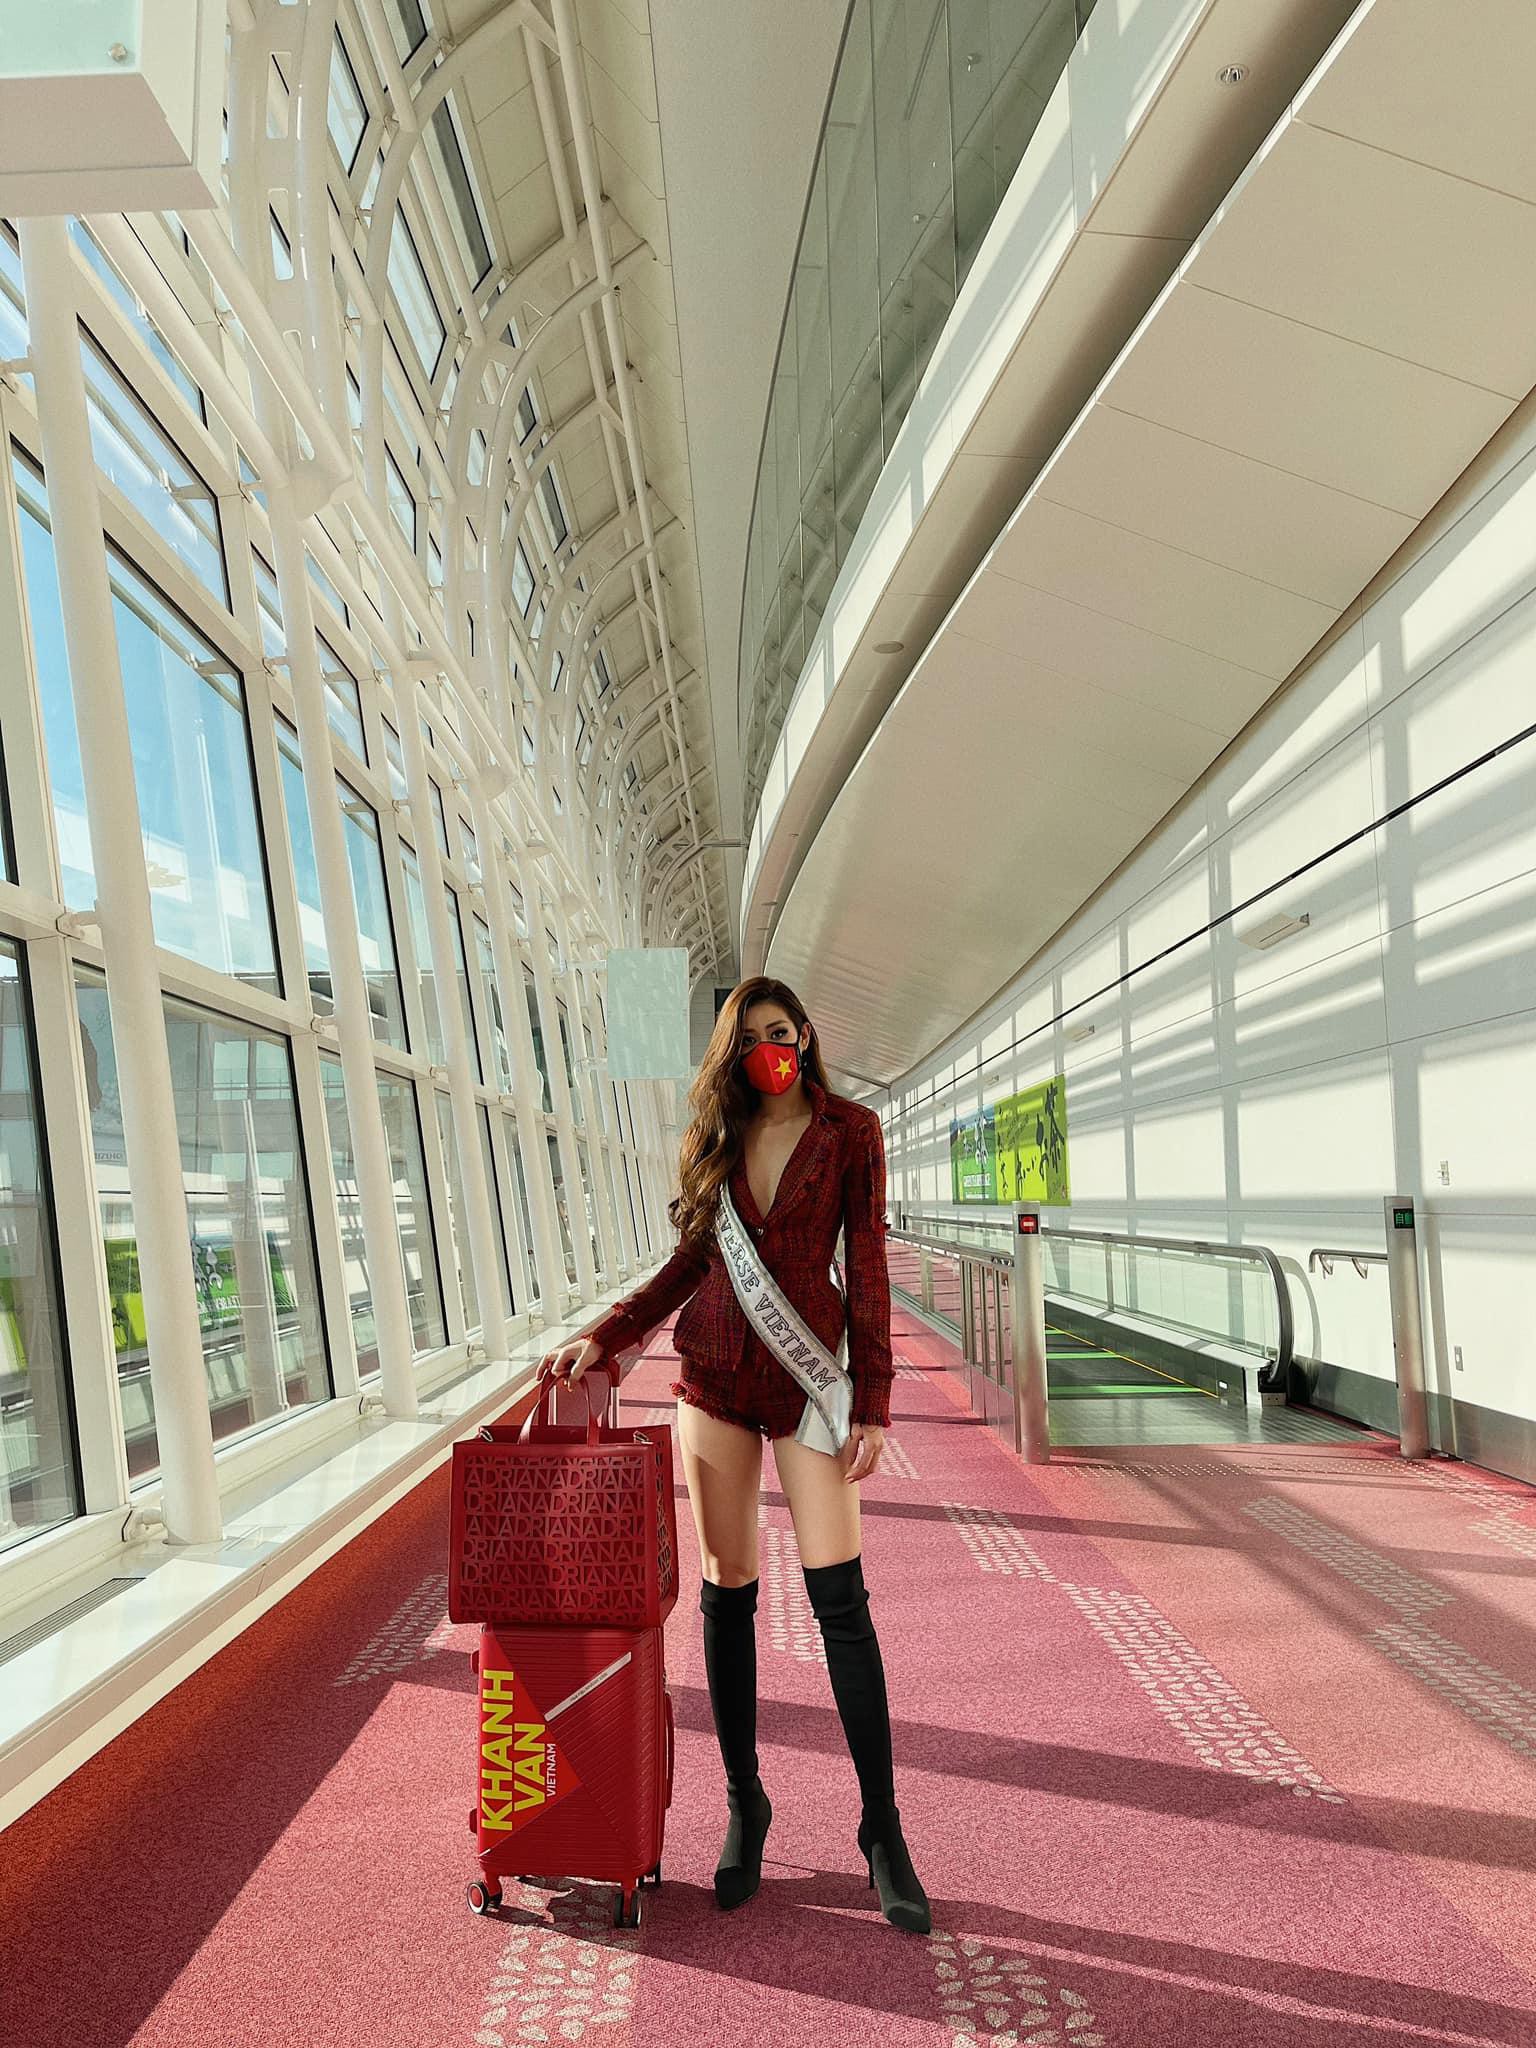 Hoa hậu Khánh Vân liên tục biến hóa phong cách thời trang sân bay khi lên đường sang Mỹ dự thi Miss Universe 2020 - Ảnh 14.